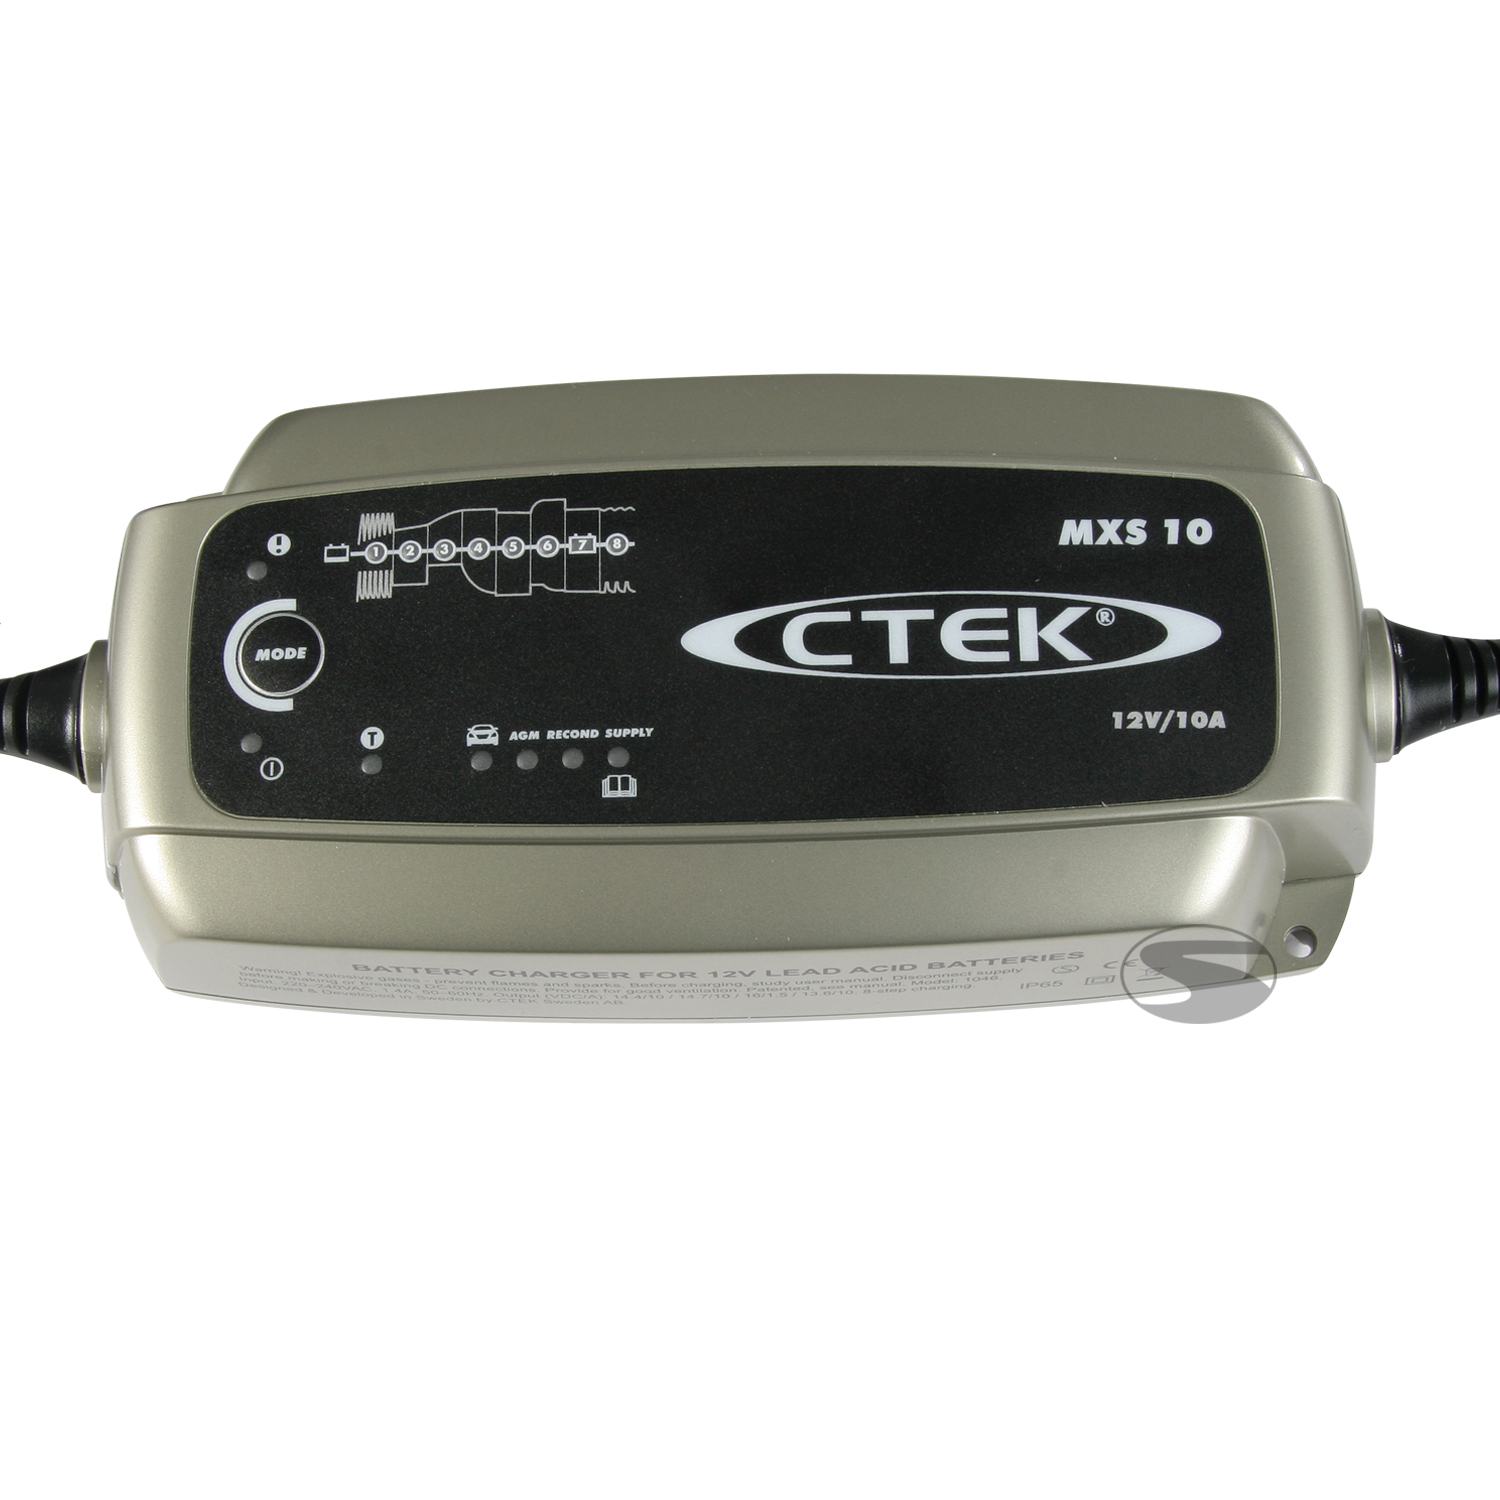 CTEK Batterie Ladegerät MXS 10